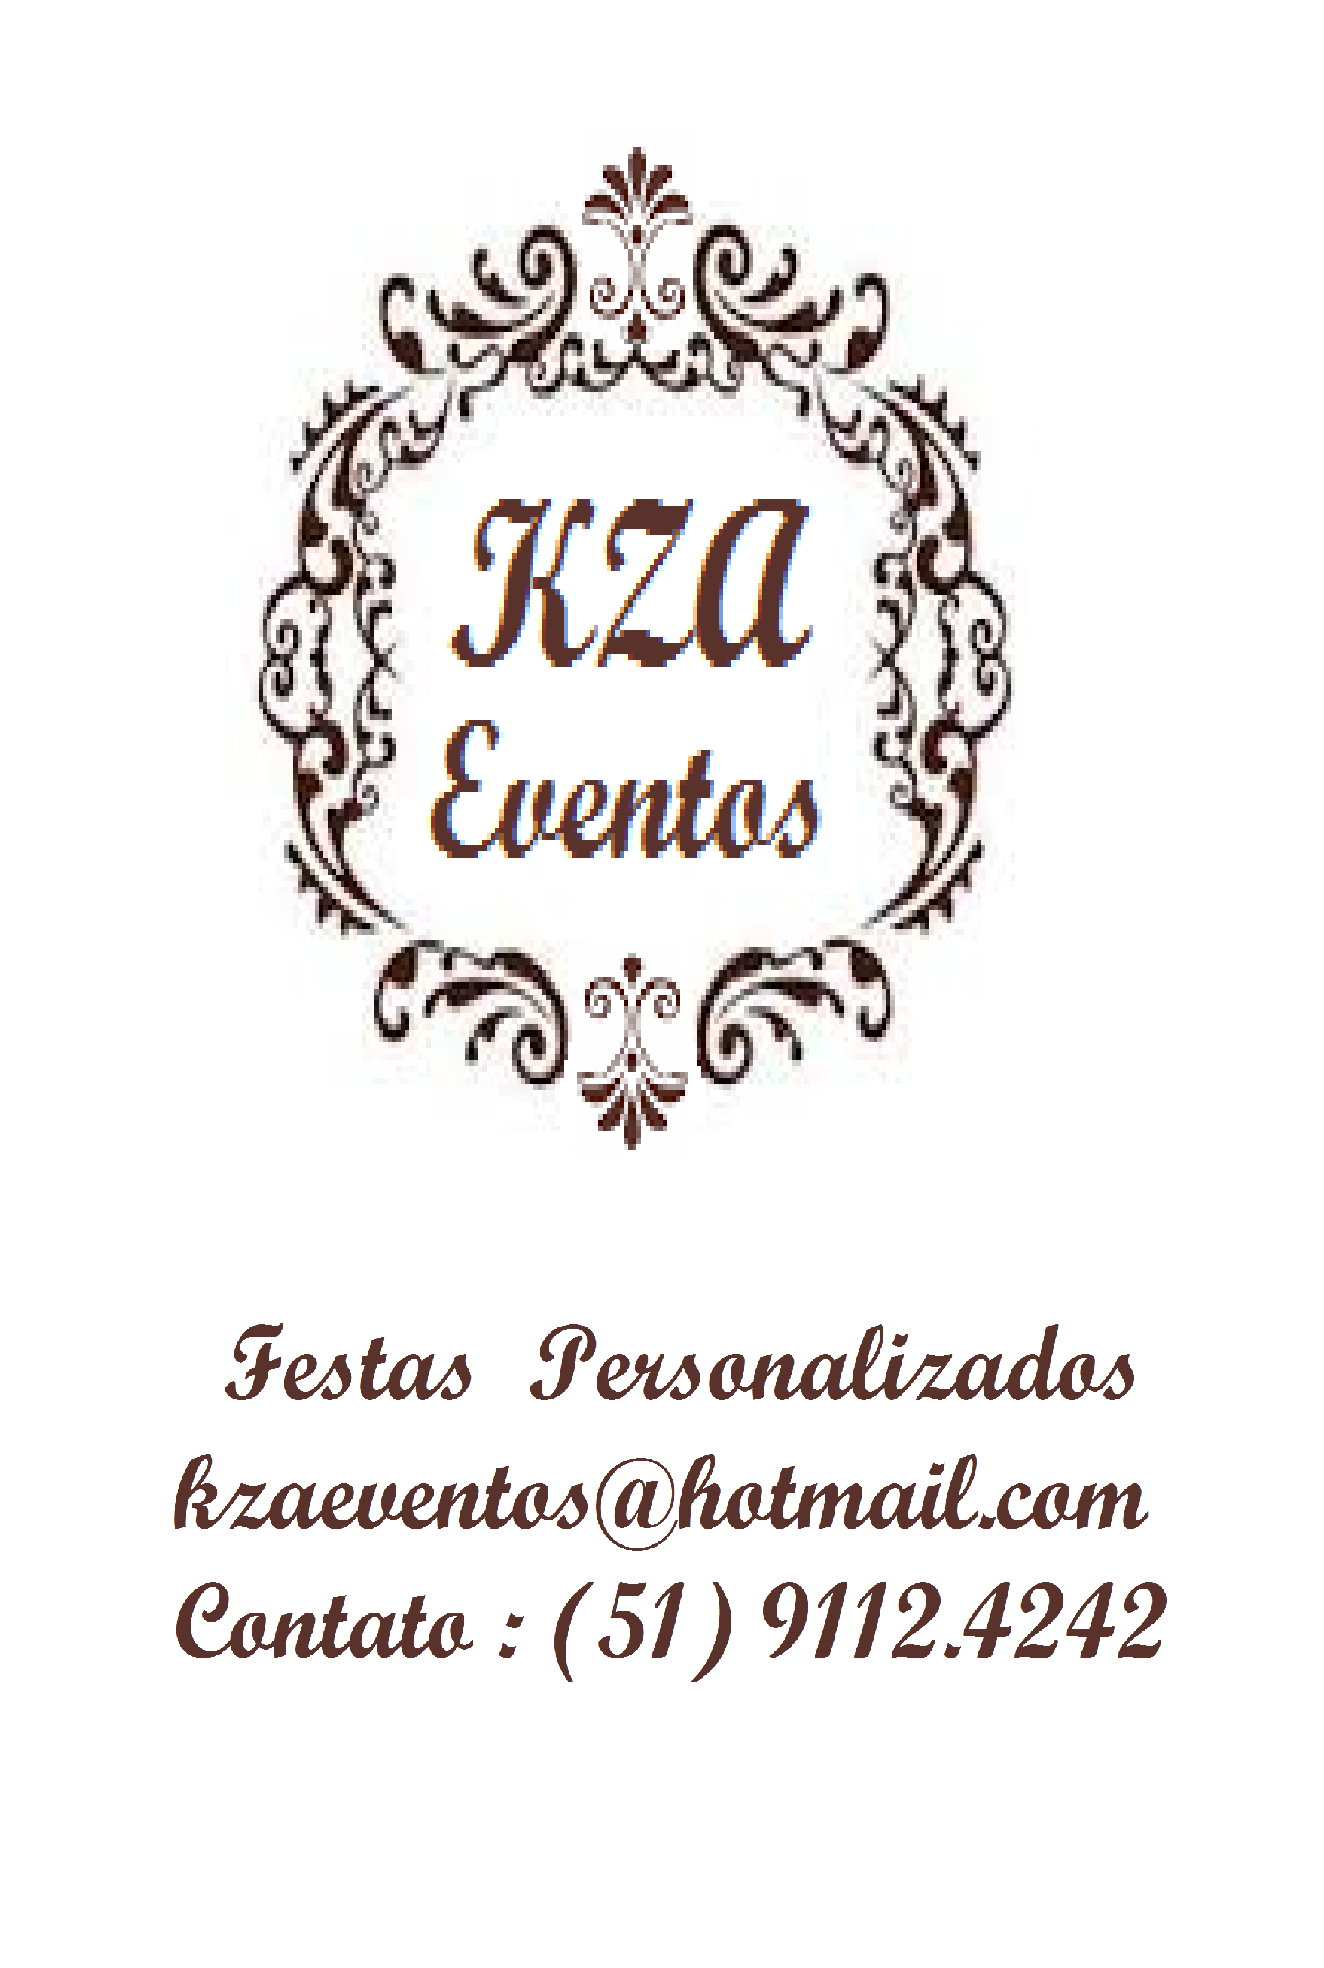 KZA EVENTOS - Porto Alegre, RS